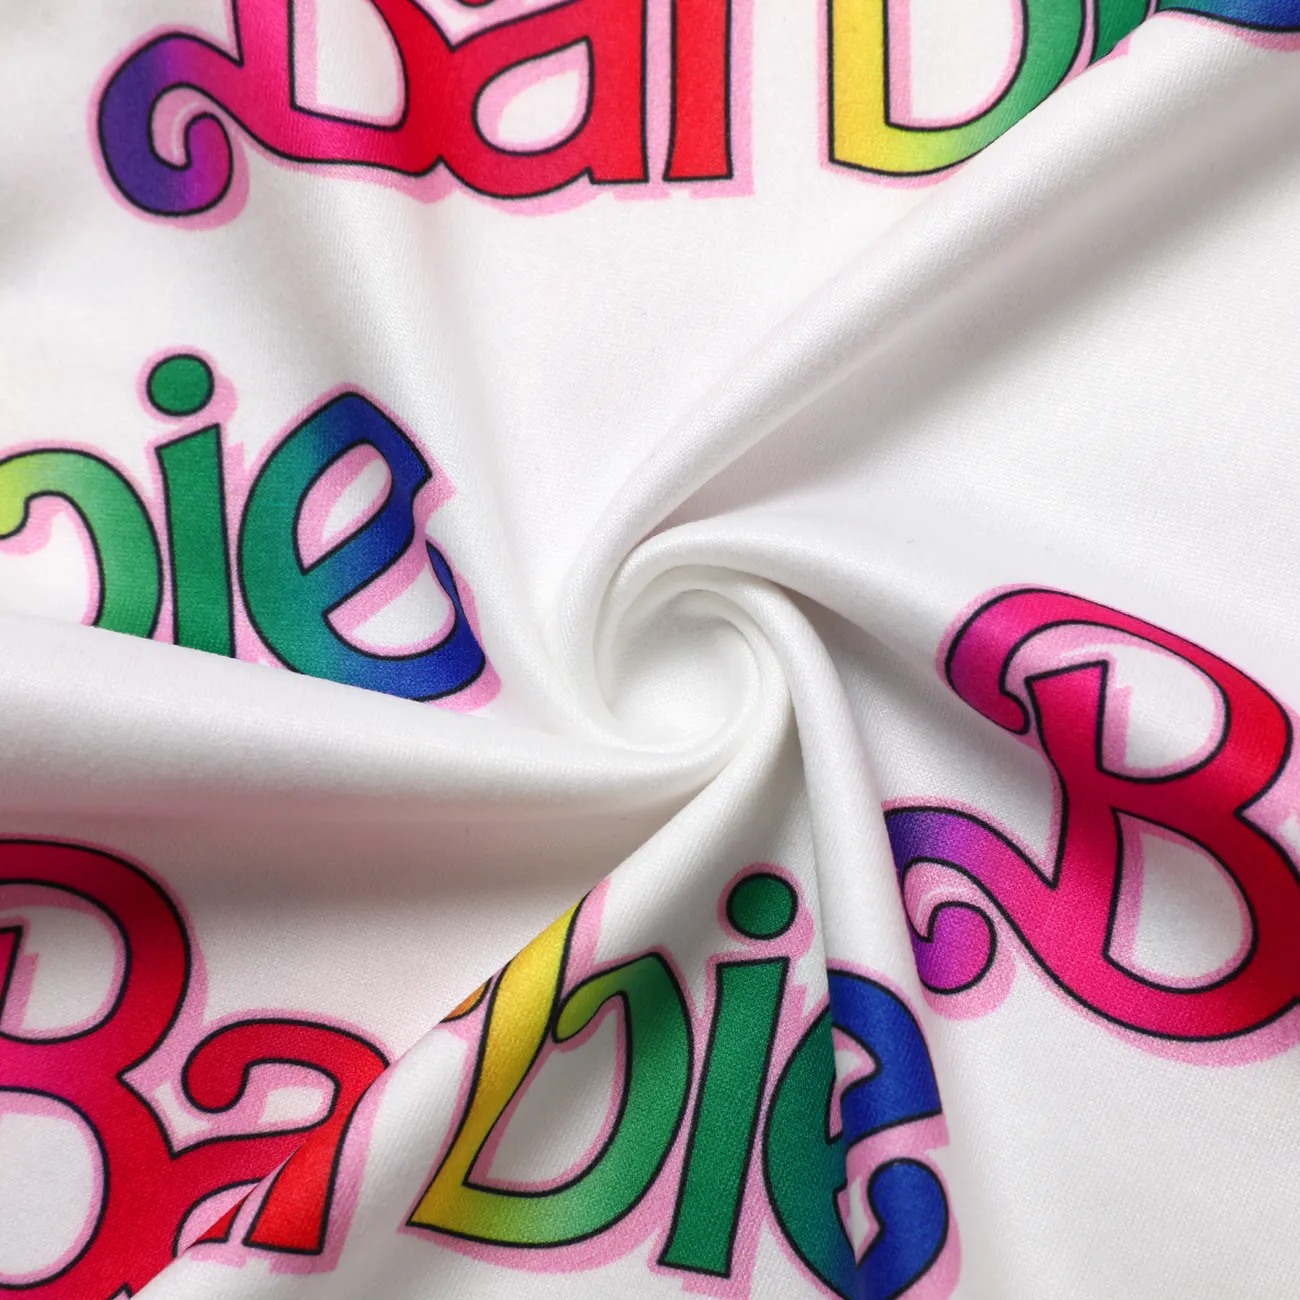 Barbie Mädchen Kindlich T-Shirts weiß big image 1